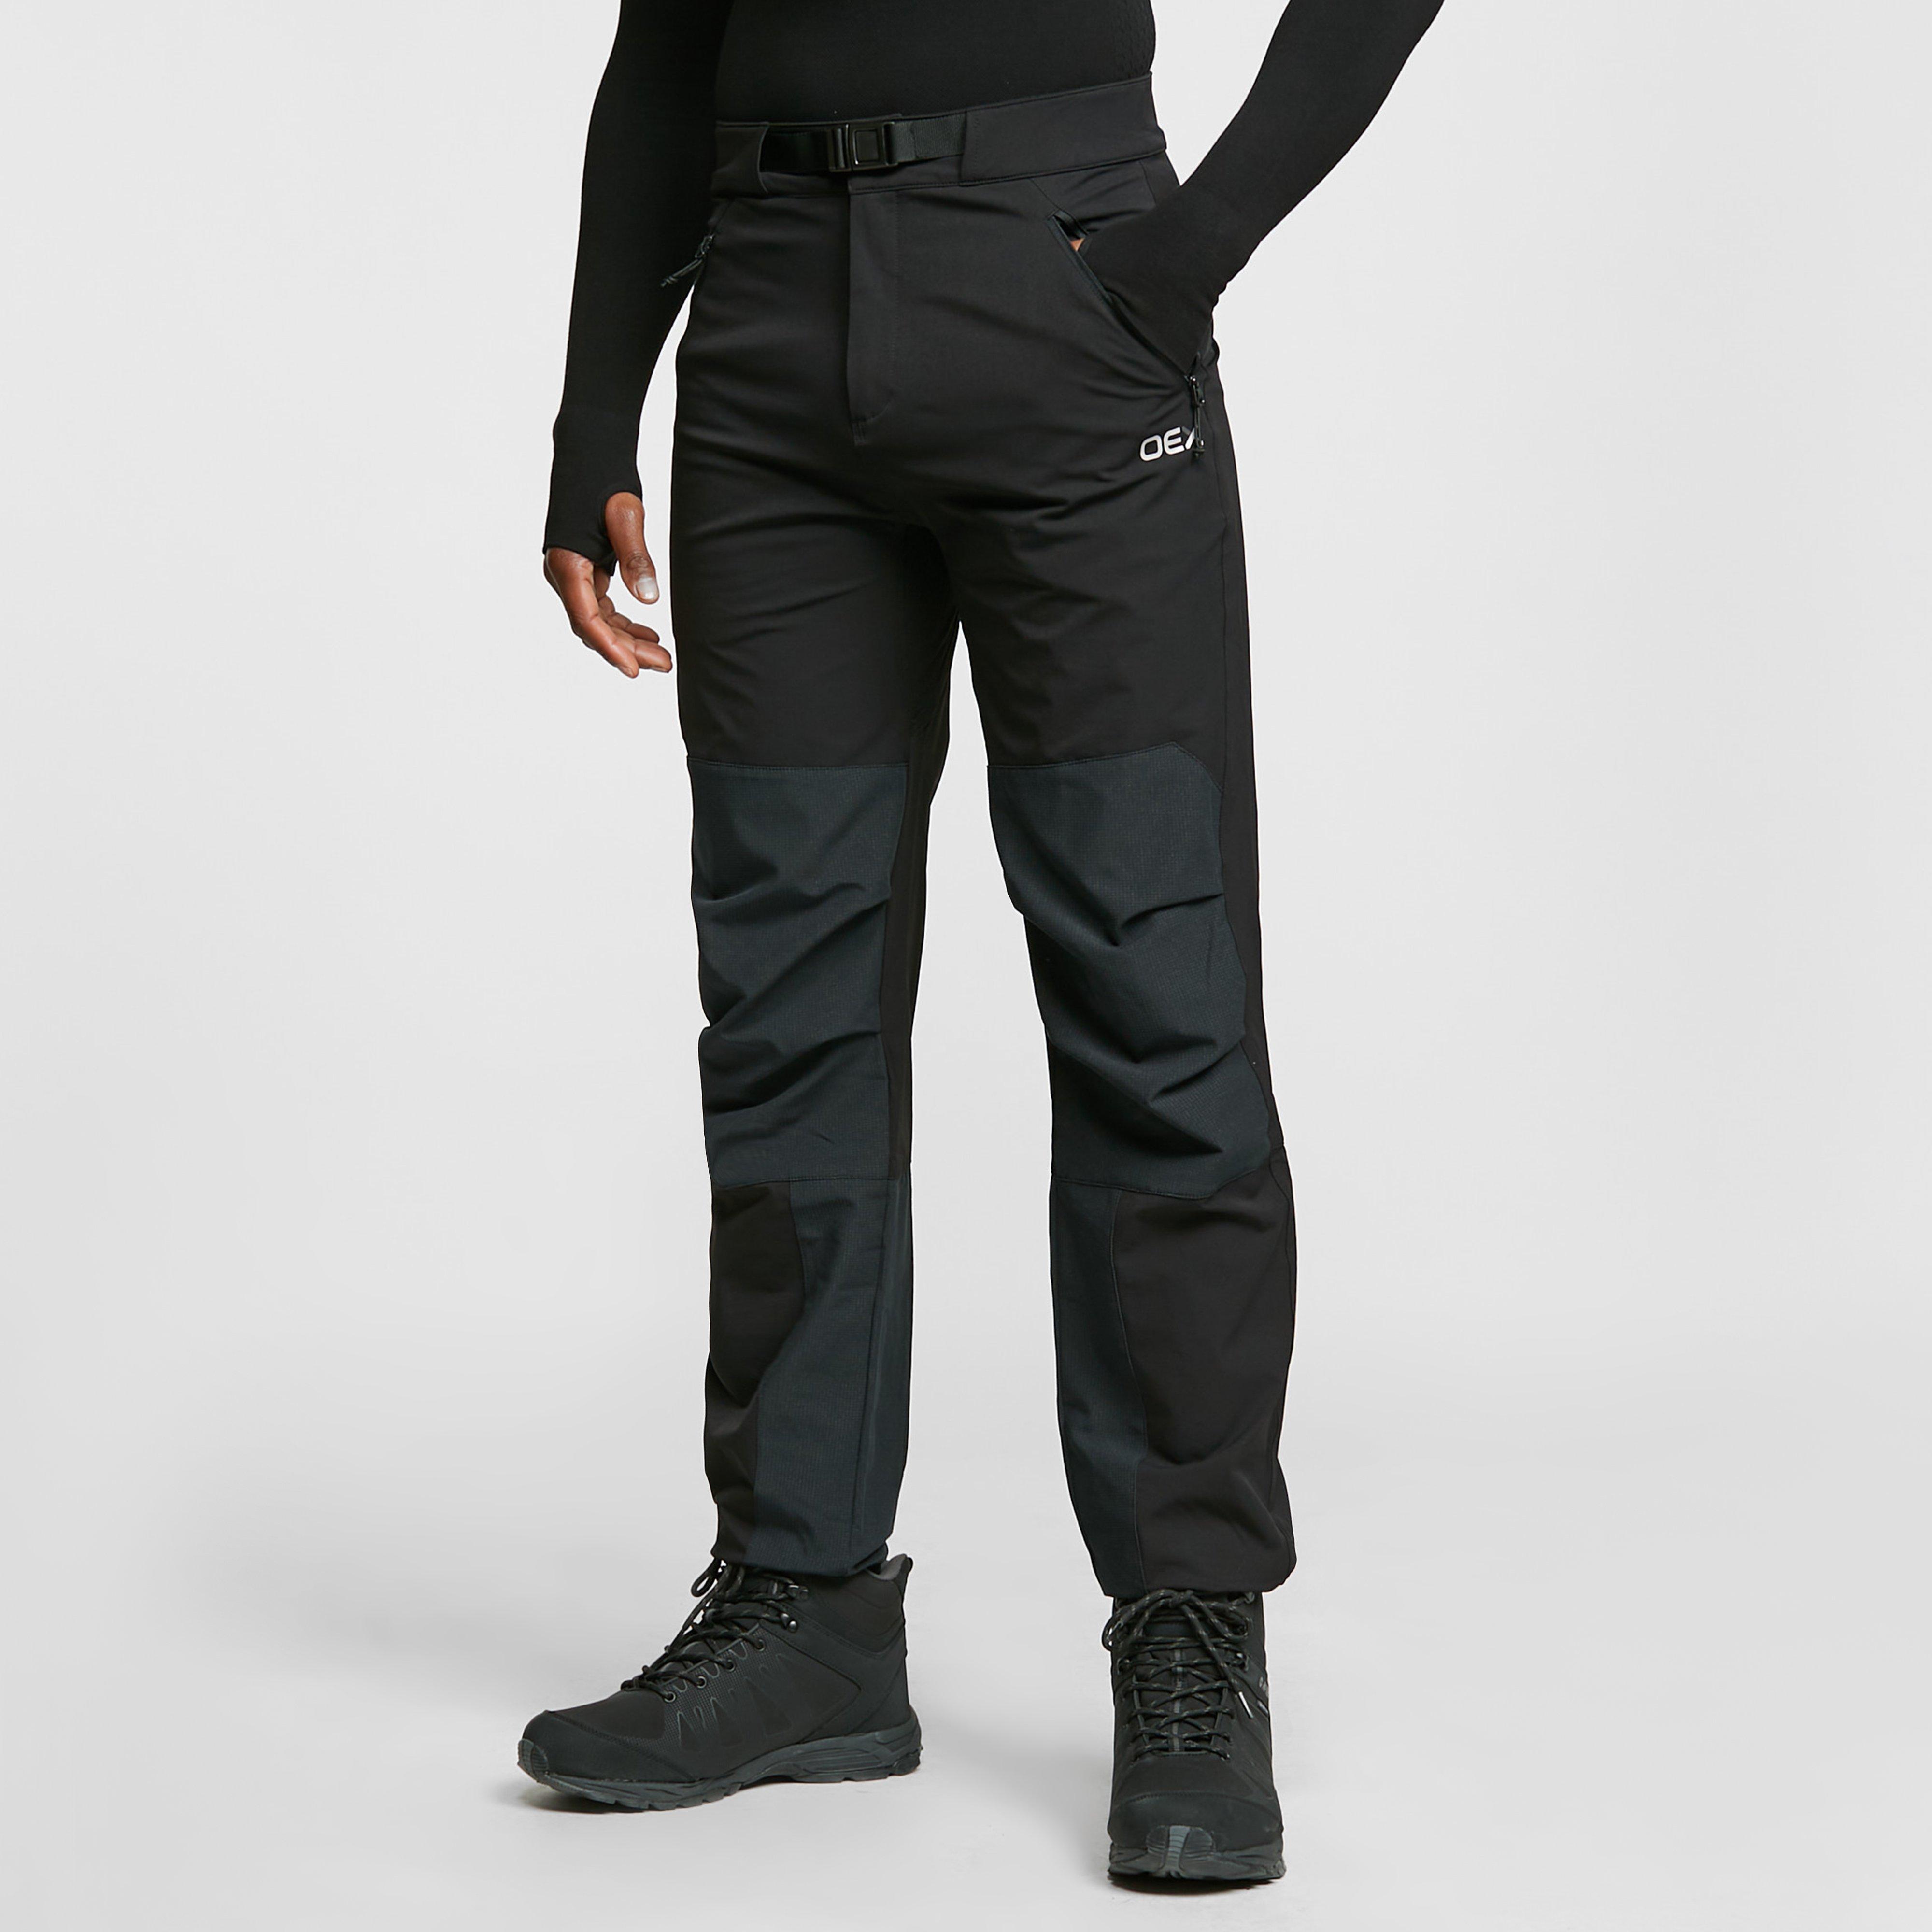 Oex Mens Strata Softshell Trouser (regular Length) - Black/trouser  Black/trouser